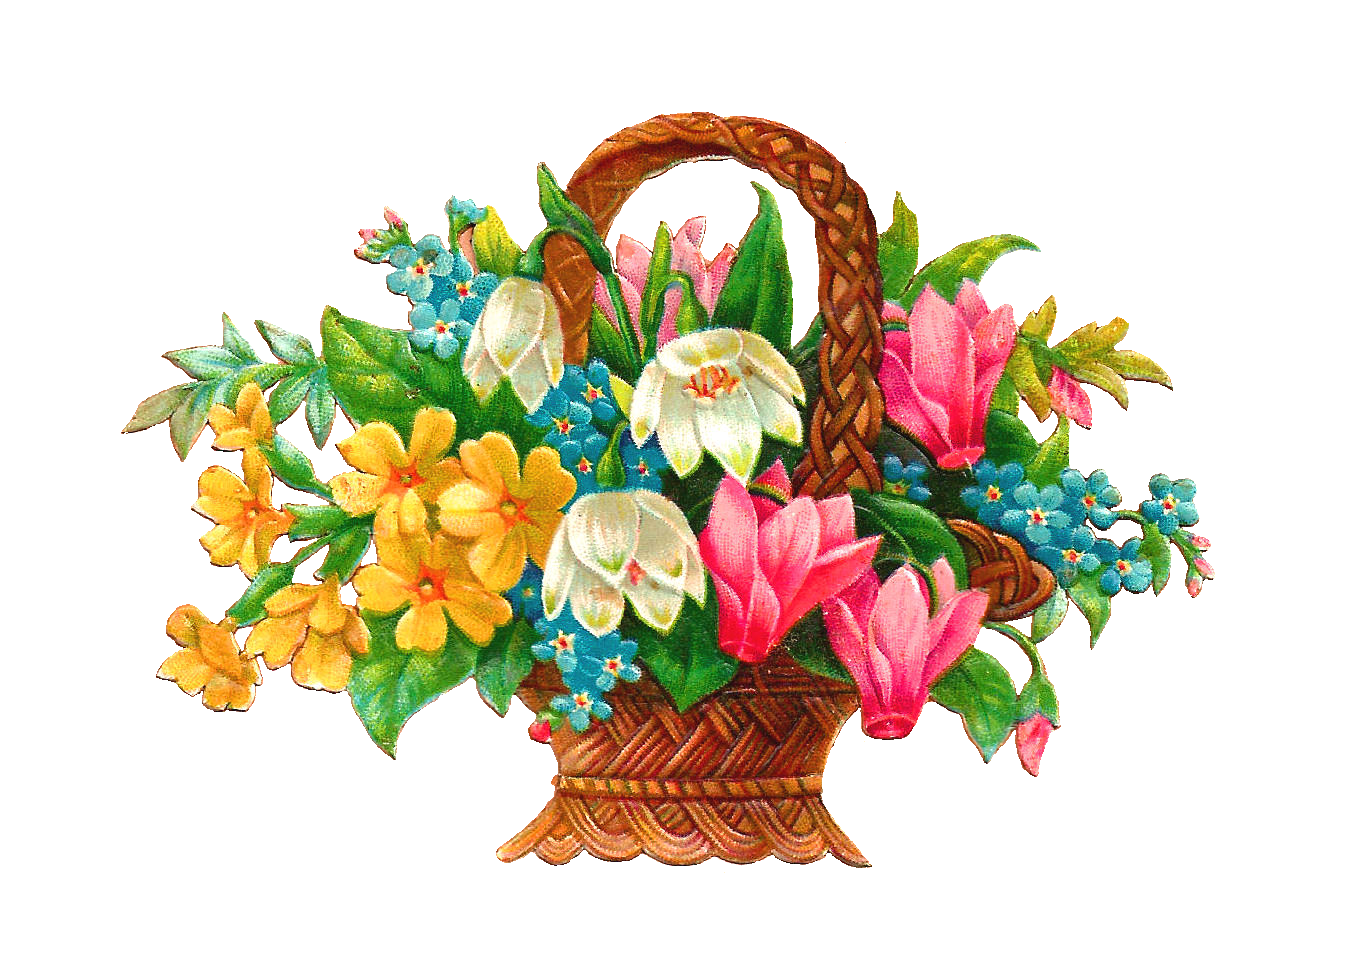 Free Flower Basket Clip Art  2 Wicket Baskets Full Of Wild Flowers